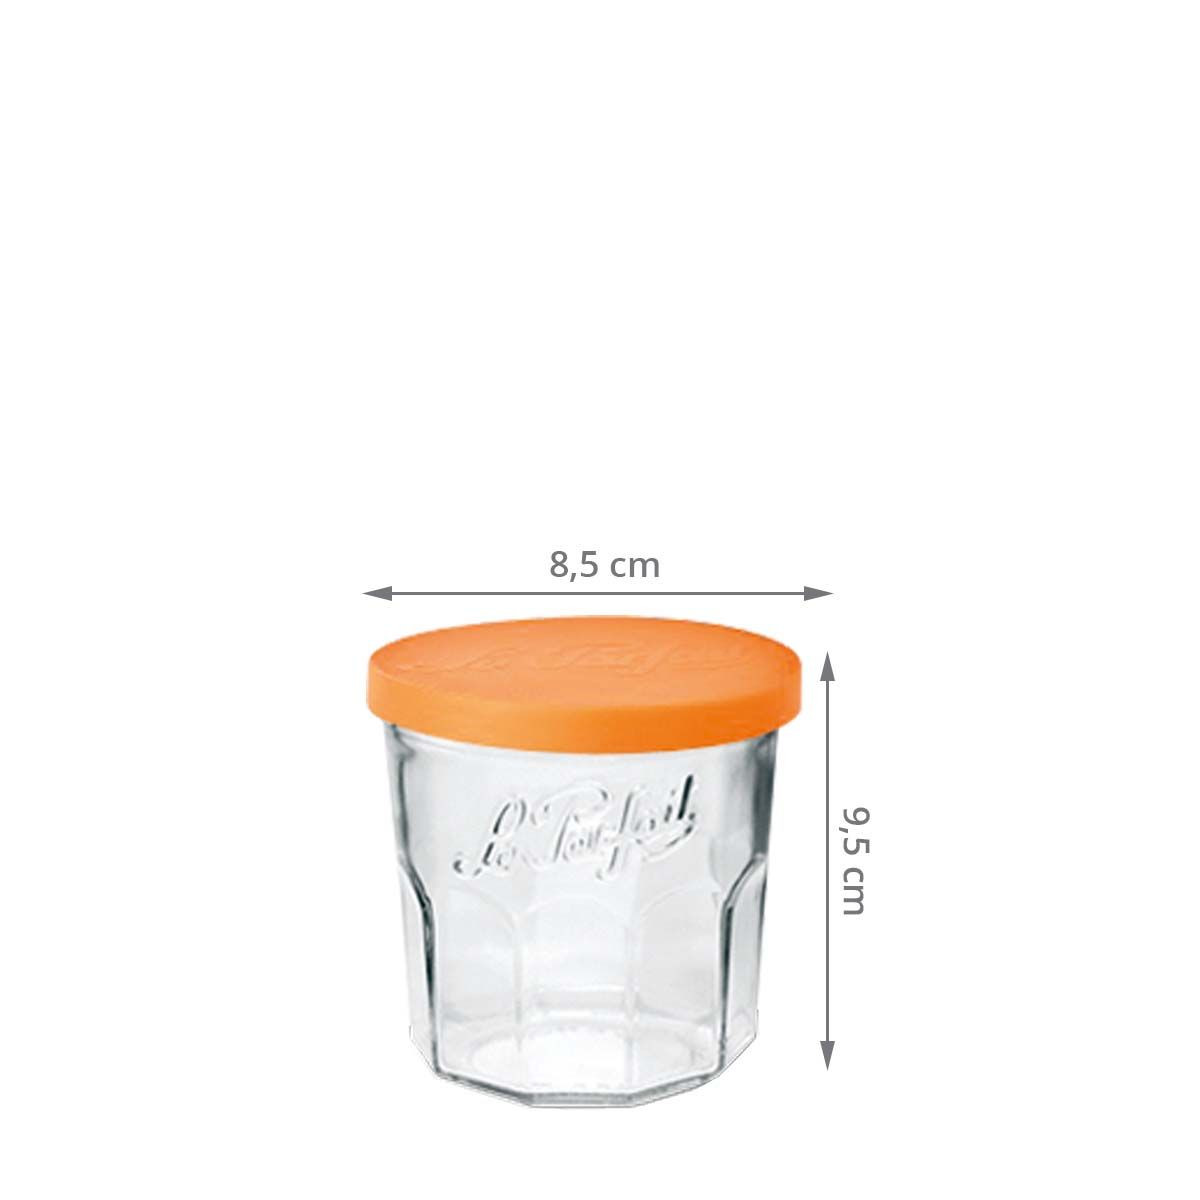 Pot de Rangement verre - Made in France